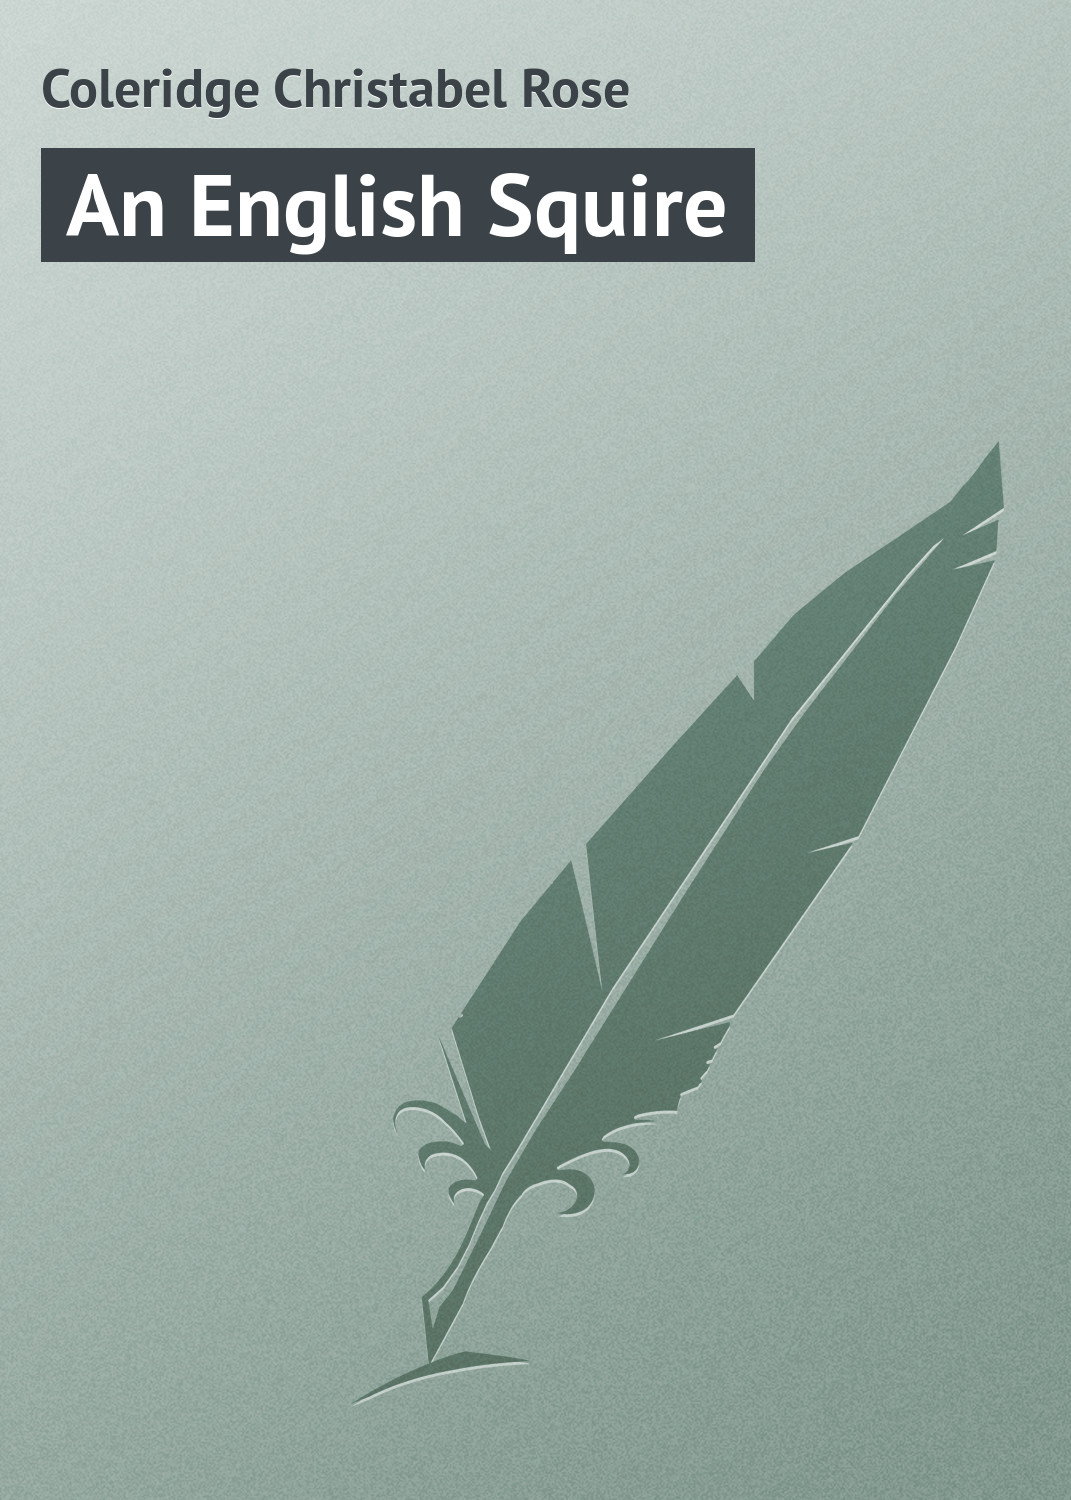 Книга An English Squire из серии , созданная Christabel Coleridge, может относится к жанру Зарубежная классика. Стоимость электронной книги An English Squire с идентификатором 23157443 составляет 5.99 руб.